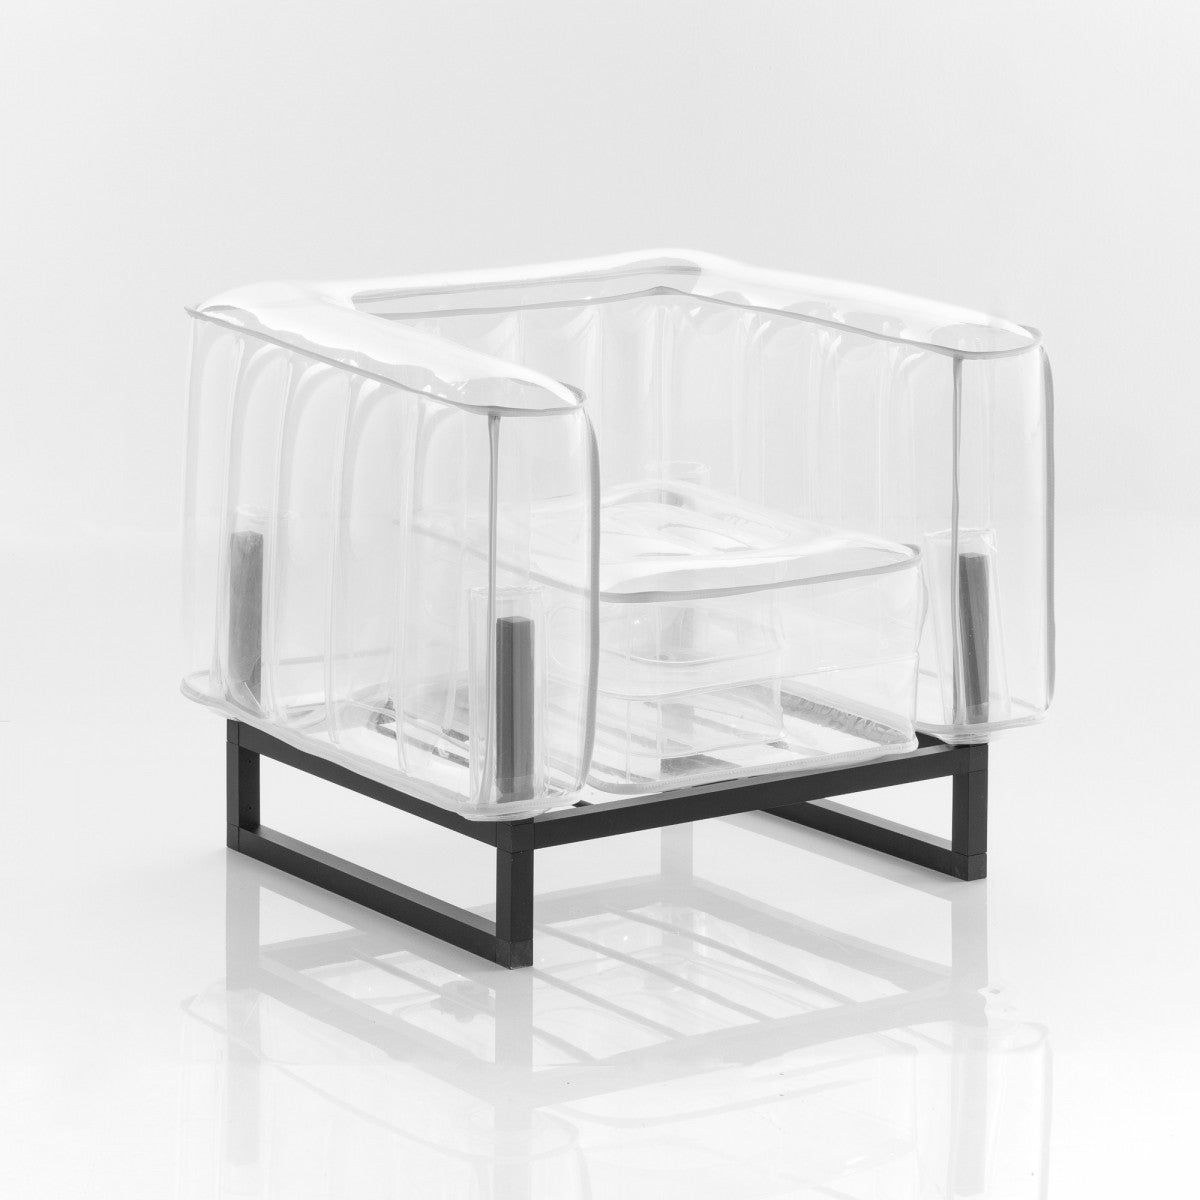 YOMI EKO Style Sofa / Aluminum Frame